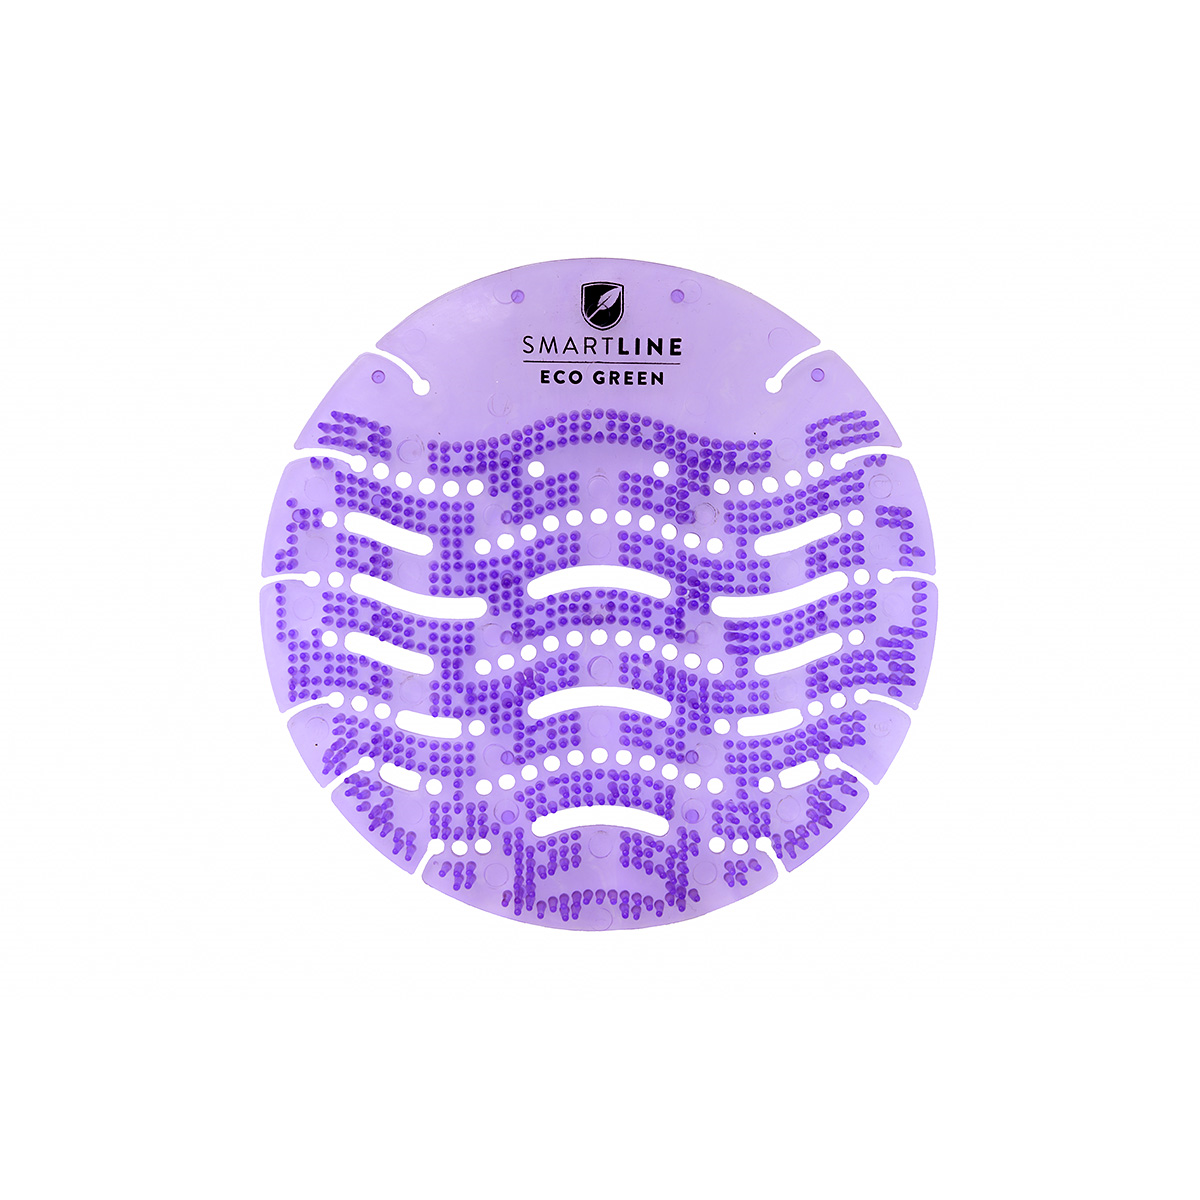 Pisoárové sítko Smartline Eco Green Advanced Lavender Dream, 1ks